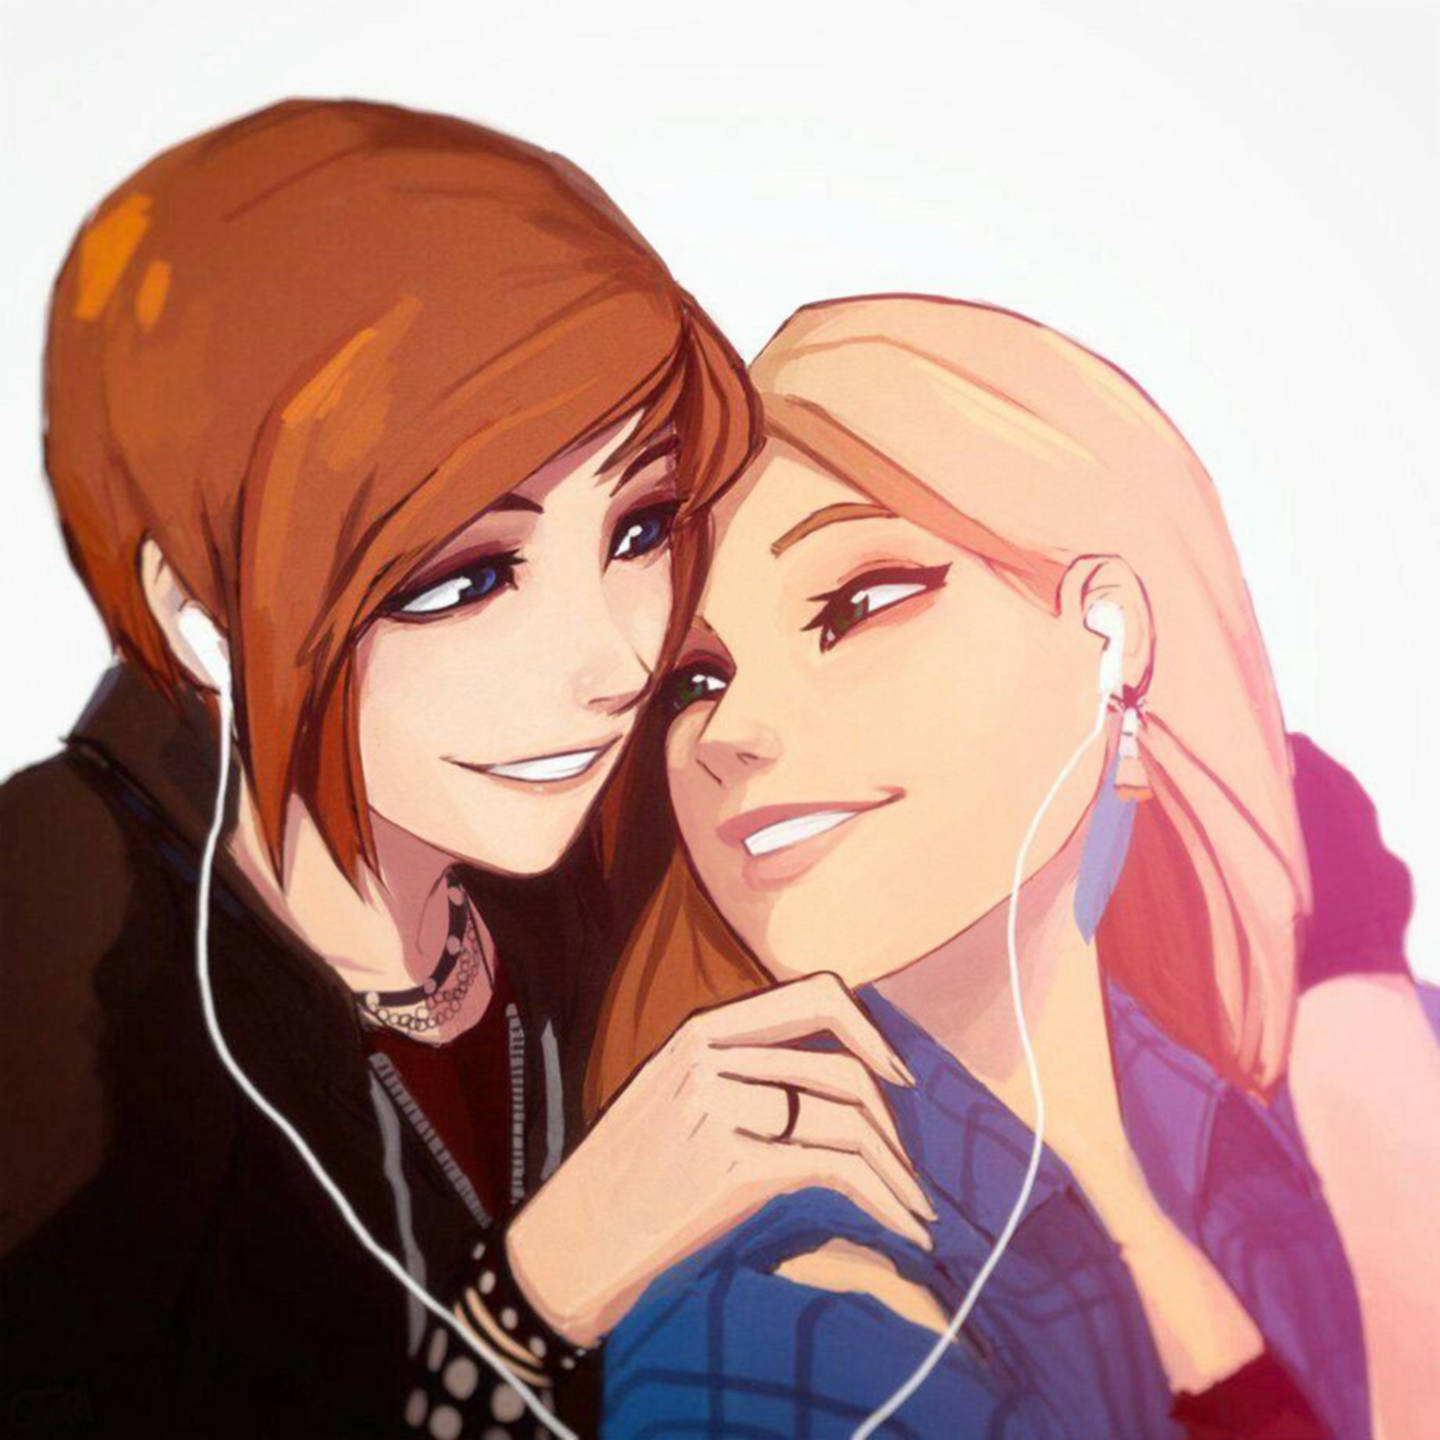 Anime Lesbians Chloe And Rachel